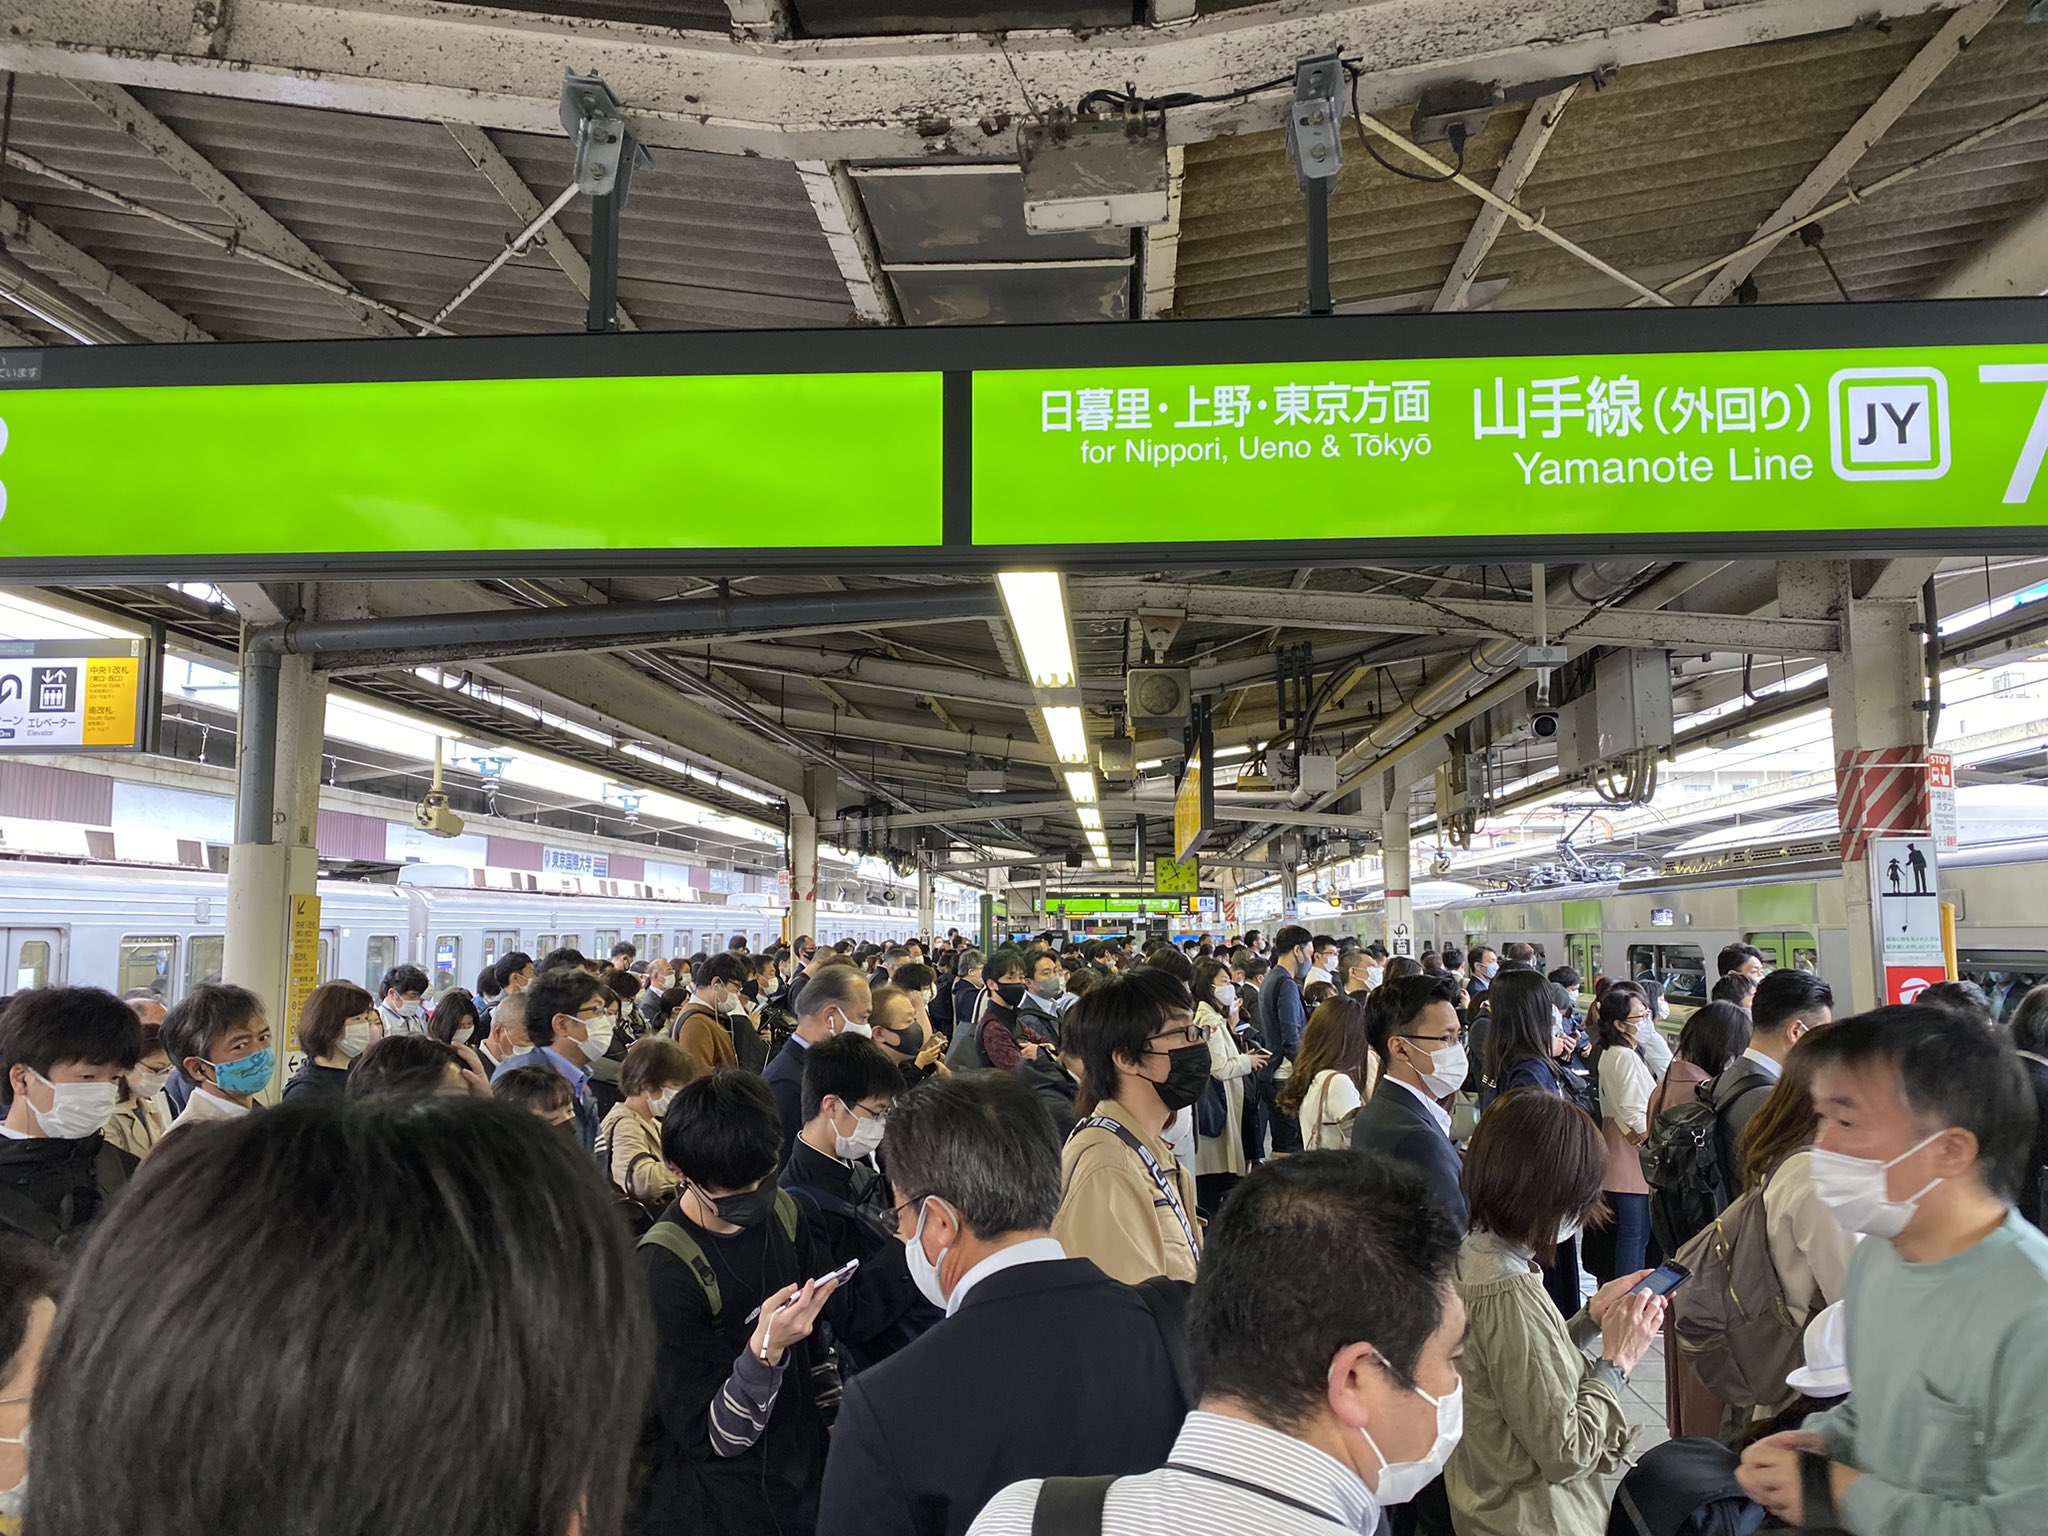 【速報】JR東日本が5月7日の減便中止 大混雑の影響